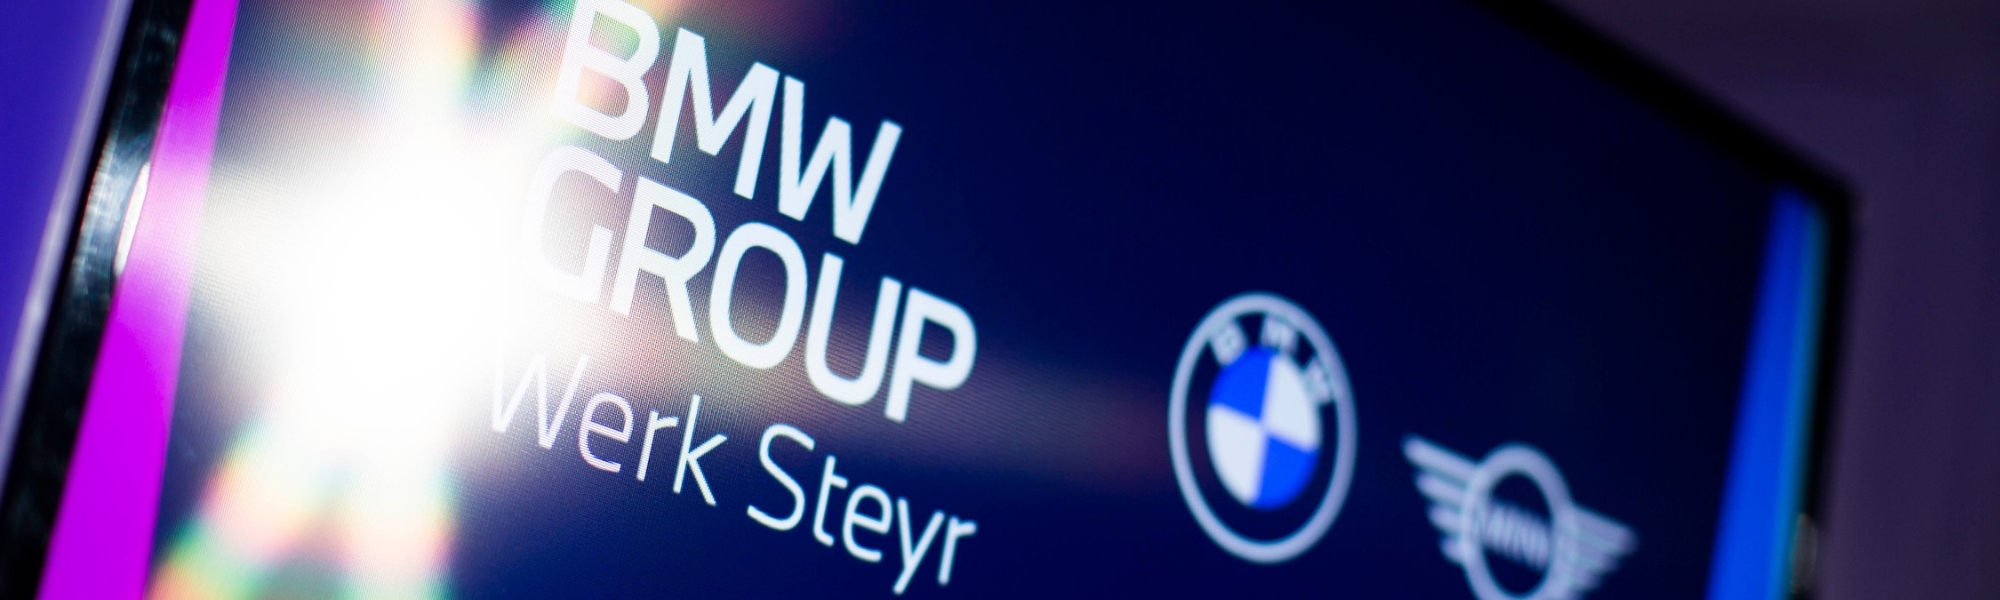 BMW Group Werk Steyr Schrift plus BMW und MINI Logo